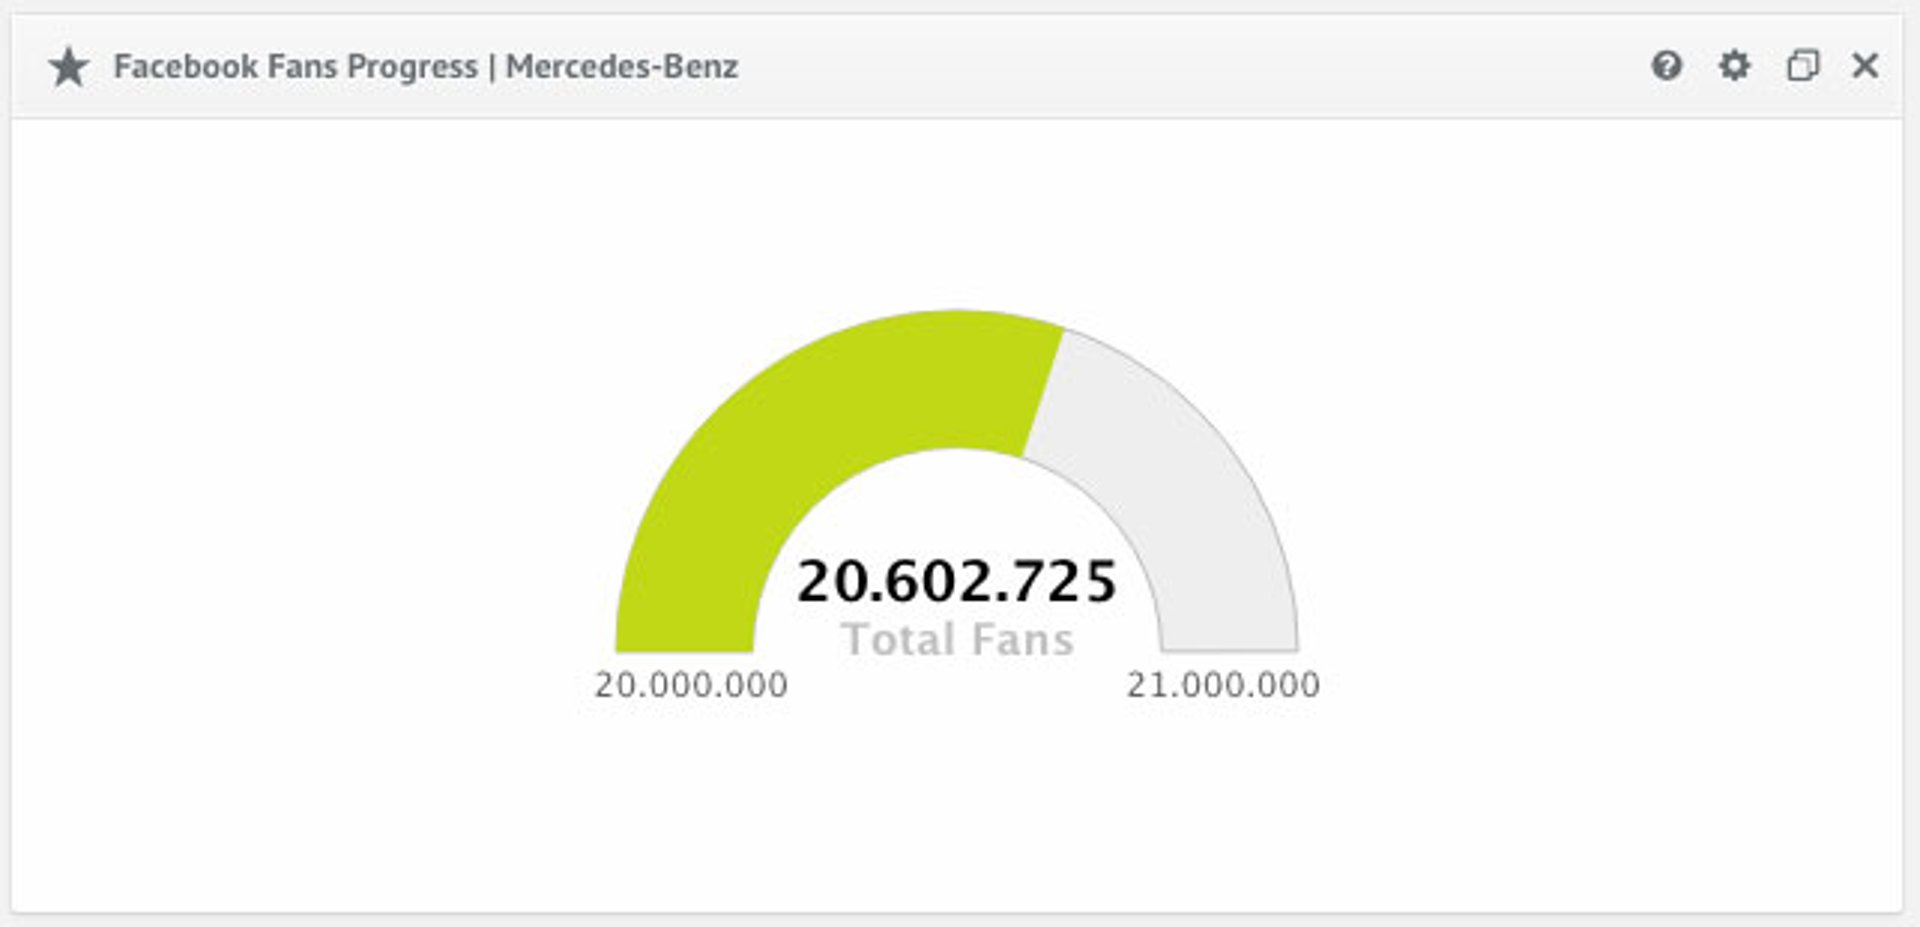 Facebook Fans Progress Mercedes Bens